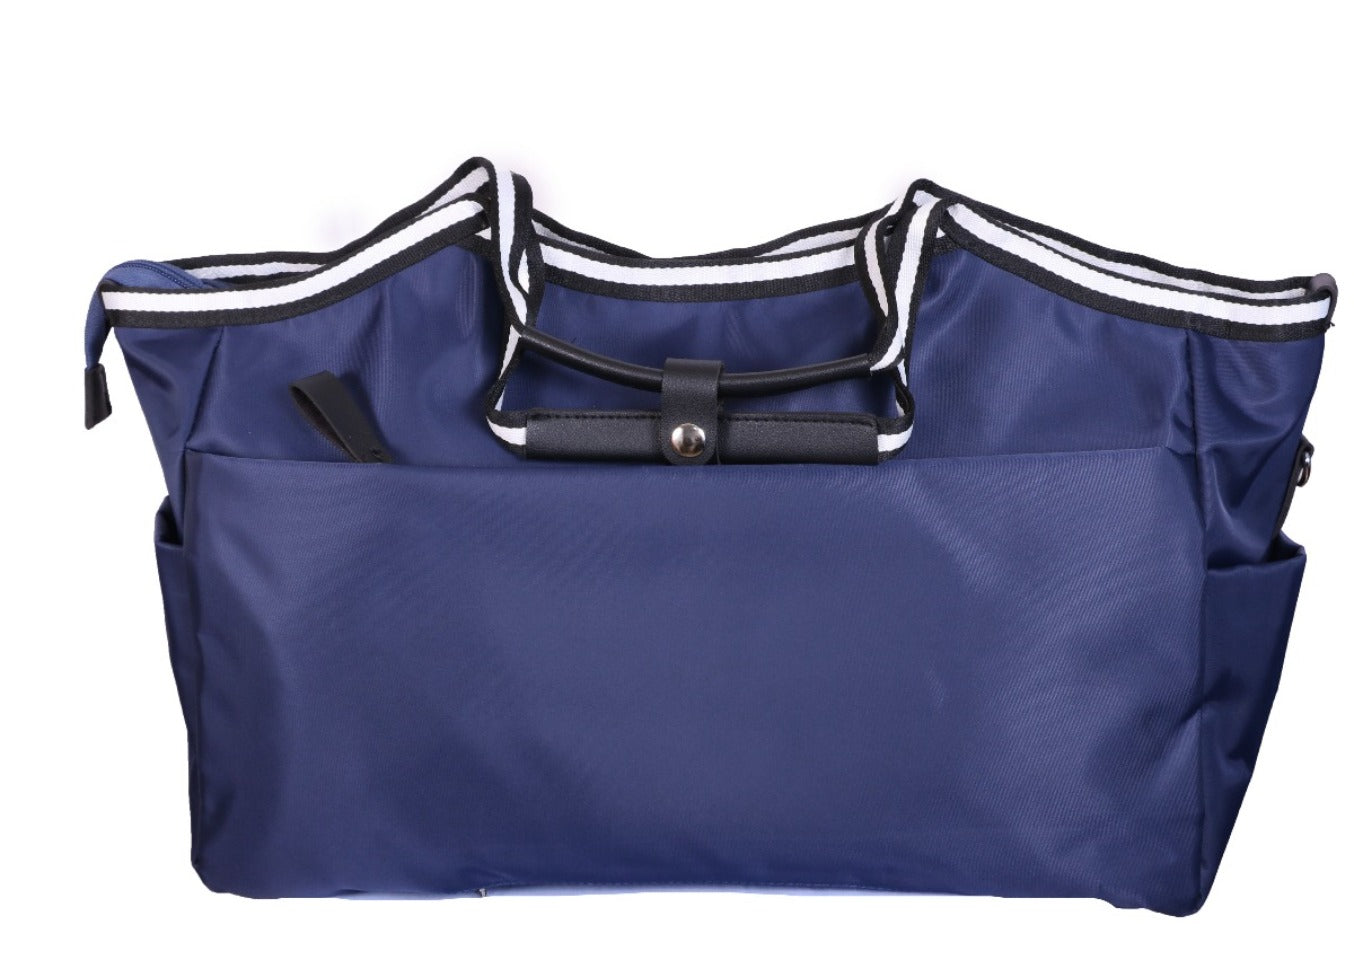 Advanced Waterproof Fabric - Shoulder Bag Light Weight